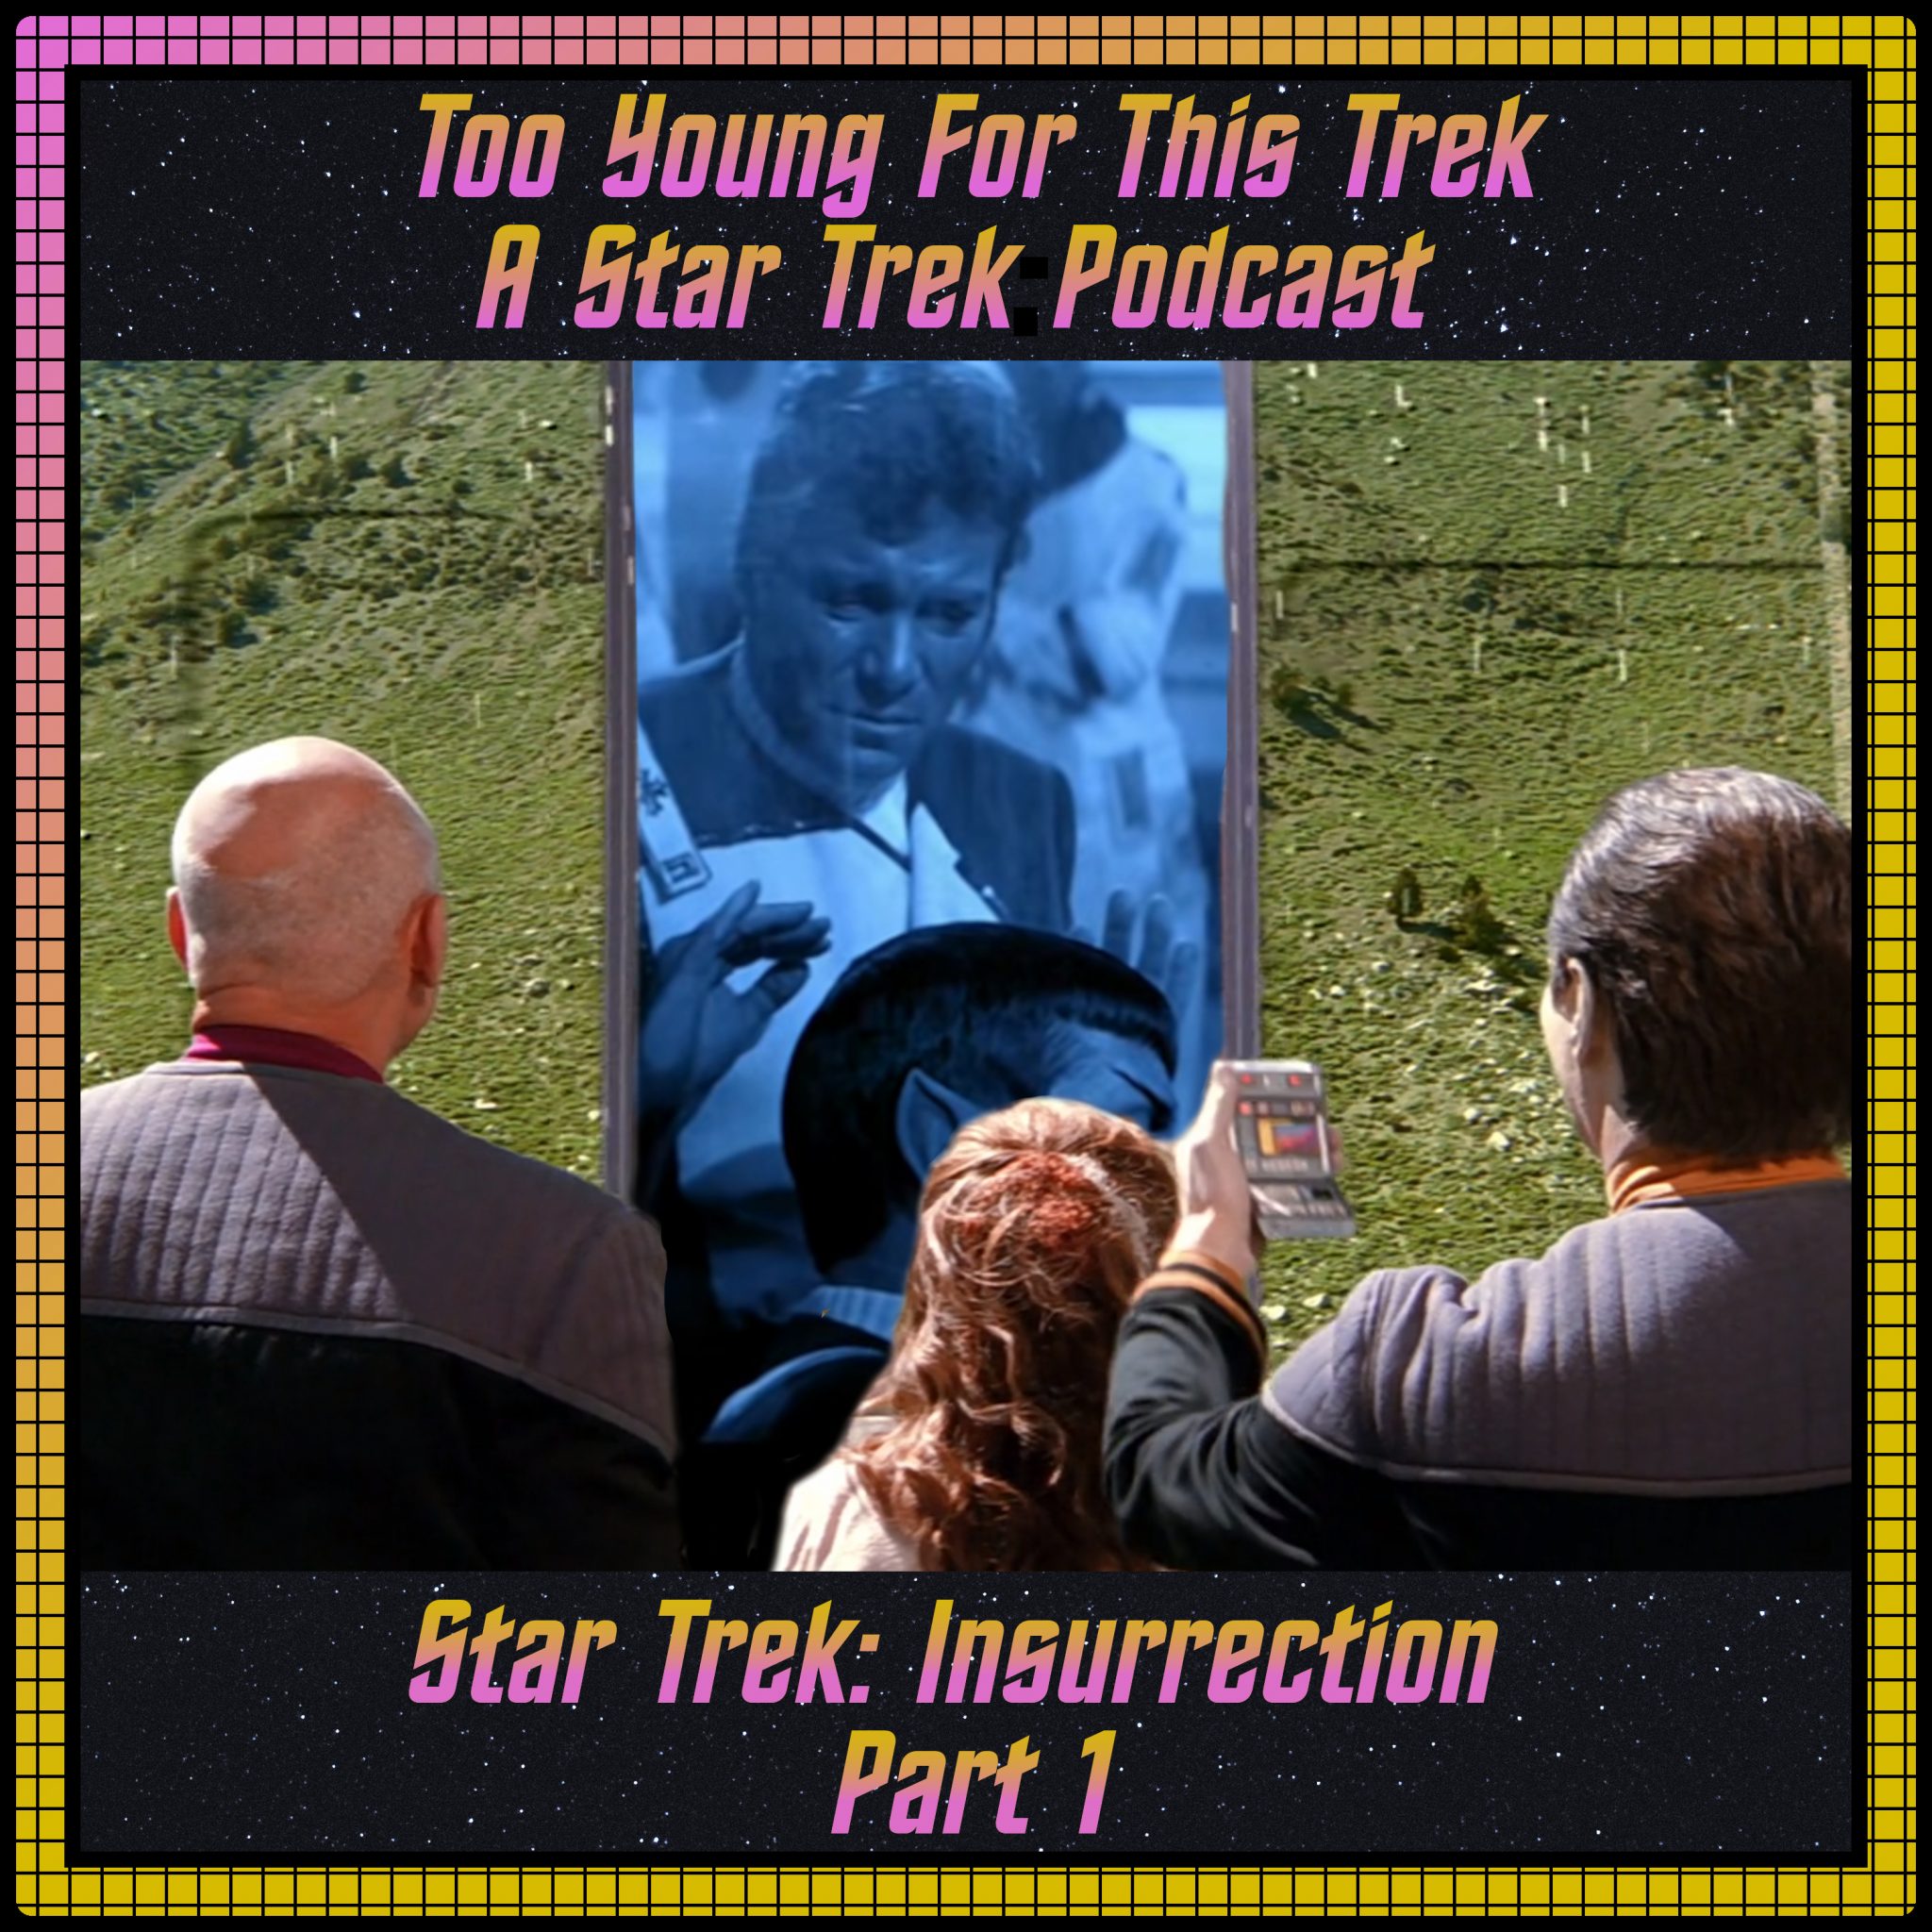 Star Trek: Insurrection - Part 1